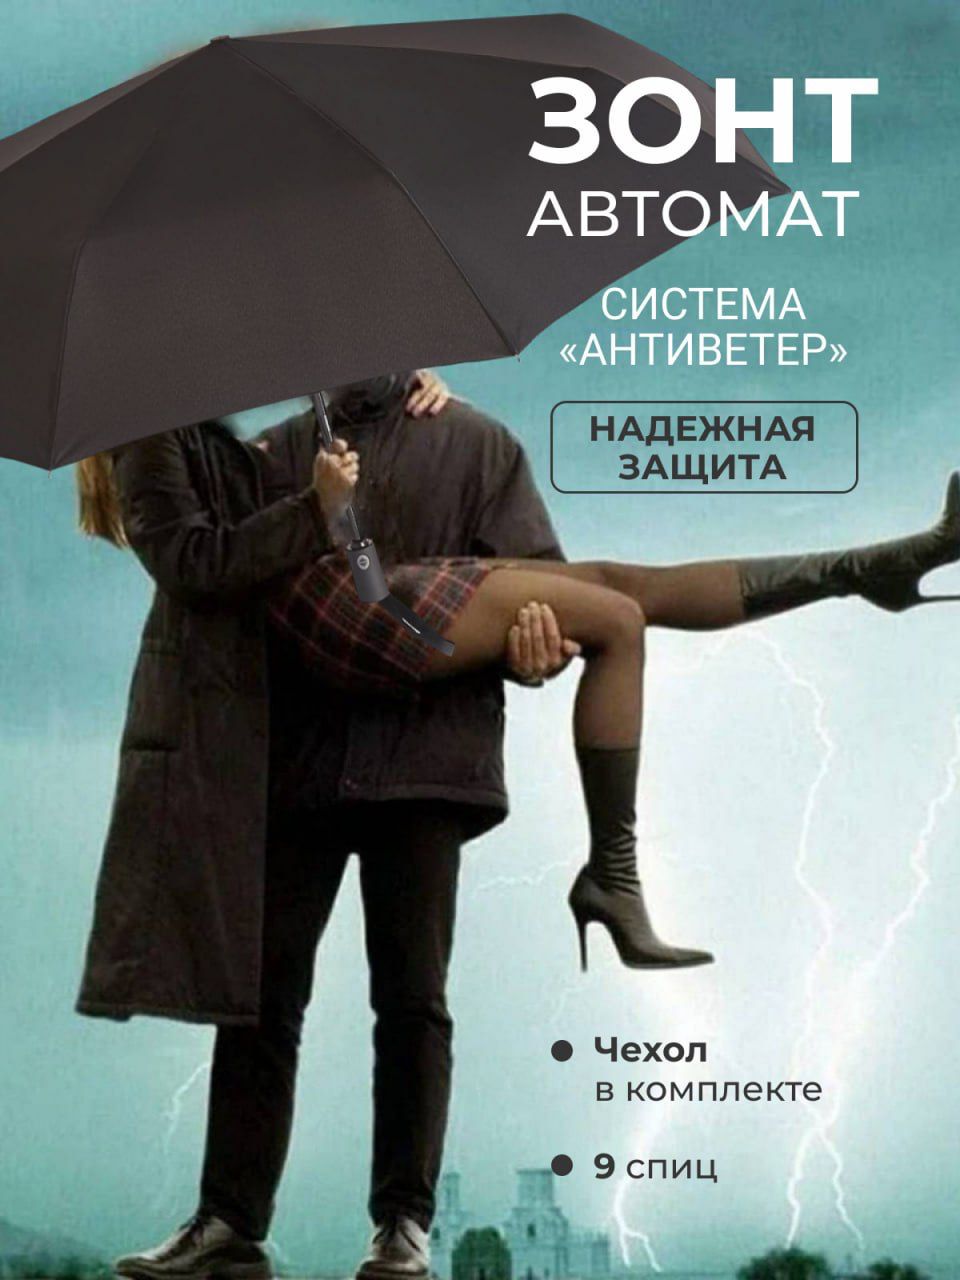 Одолжил ей зонтик. Мужчина и женщина под зонтом. Парень и девушка под зонтом. Женщина с зонтом. Мужчина с зонтом.